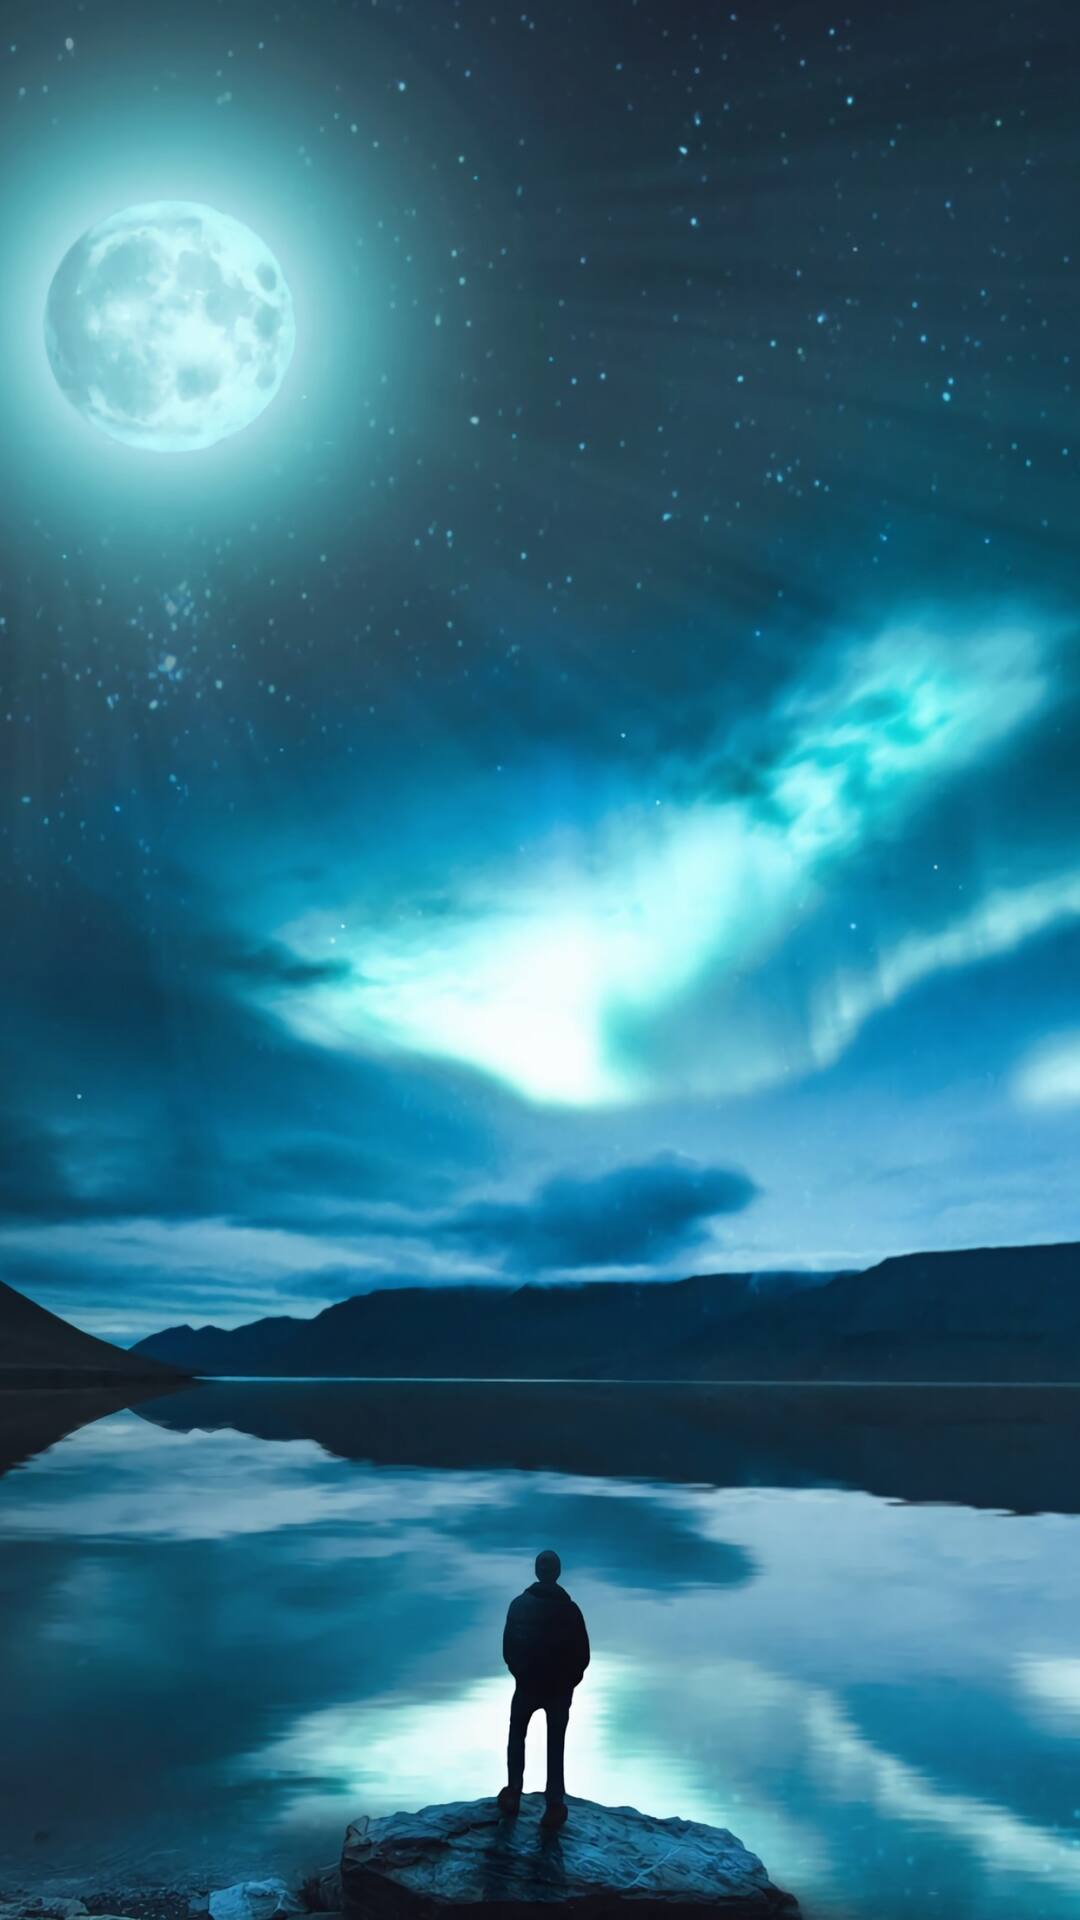 明月，镜湖，岸边的人，唯美的一幅风景手机壁纸